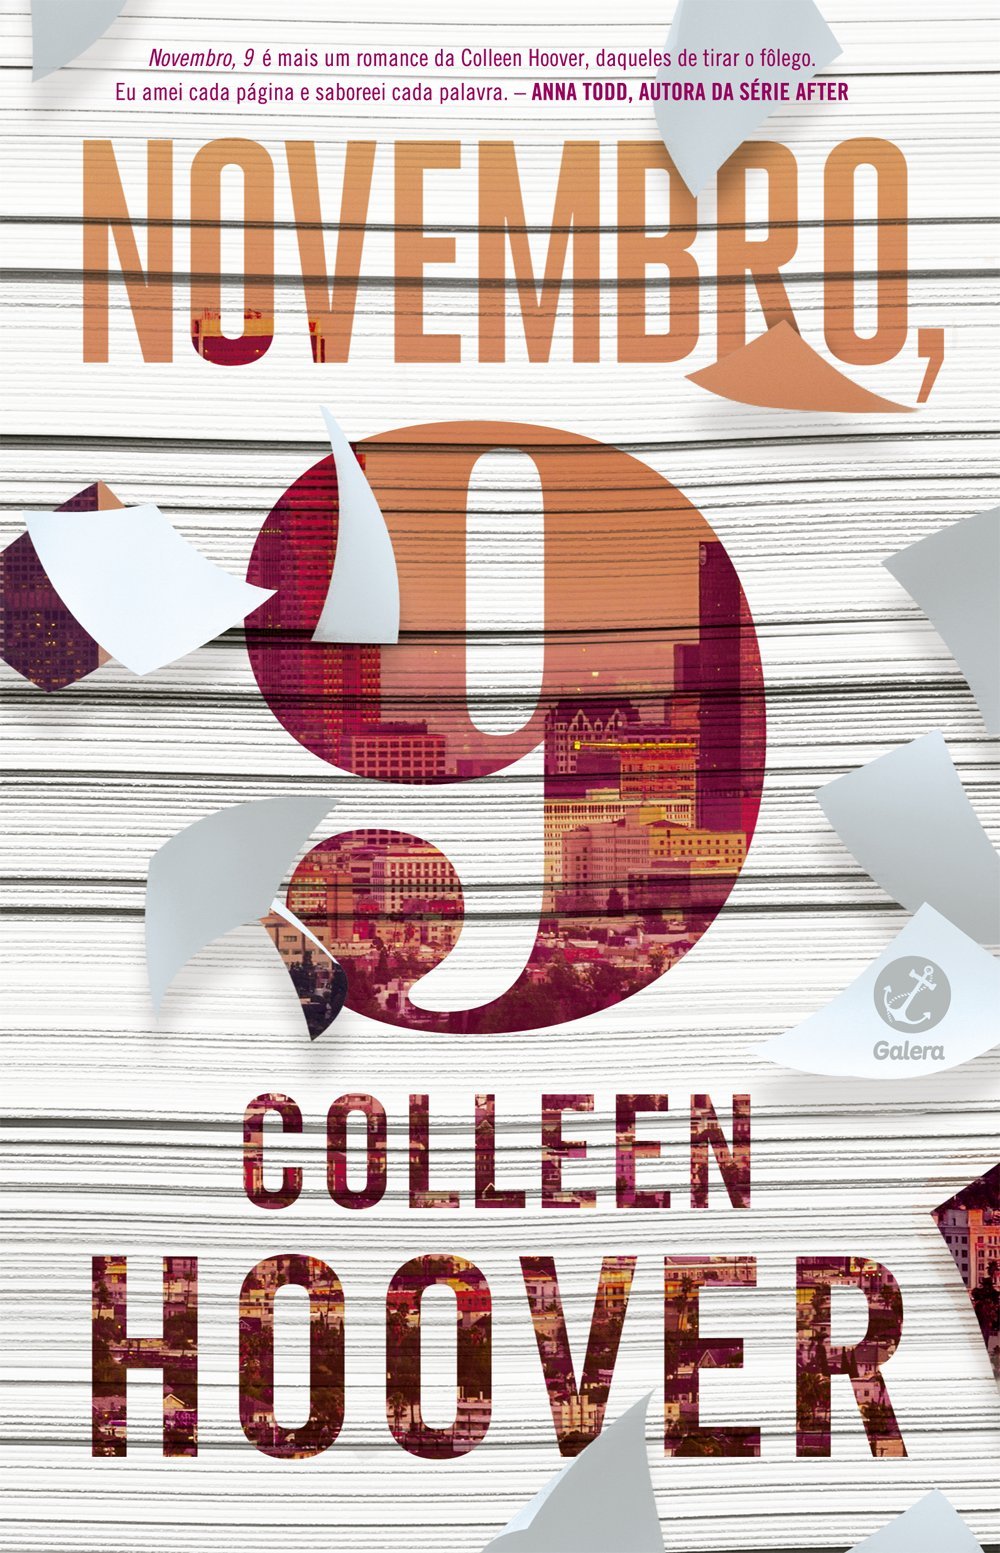 9 de Novembro de Colleen Hoover